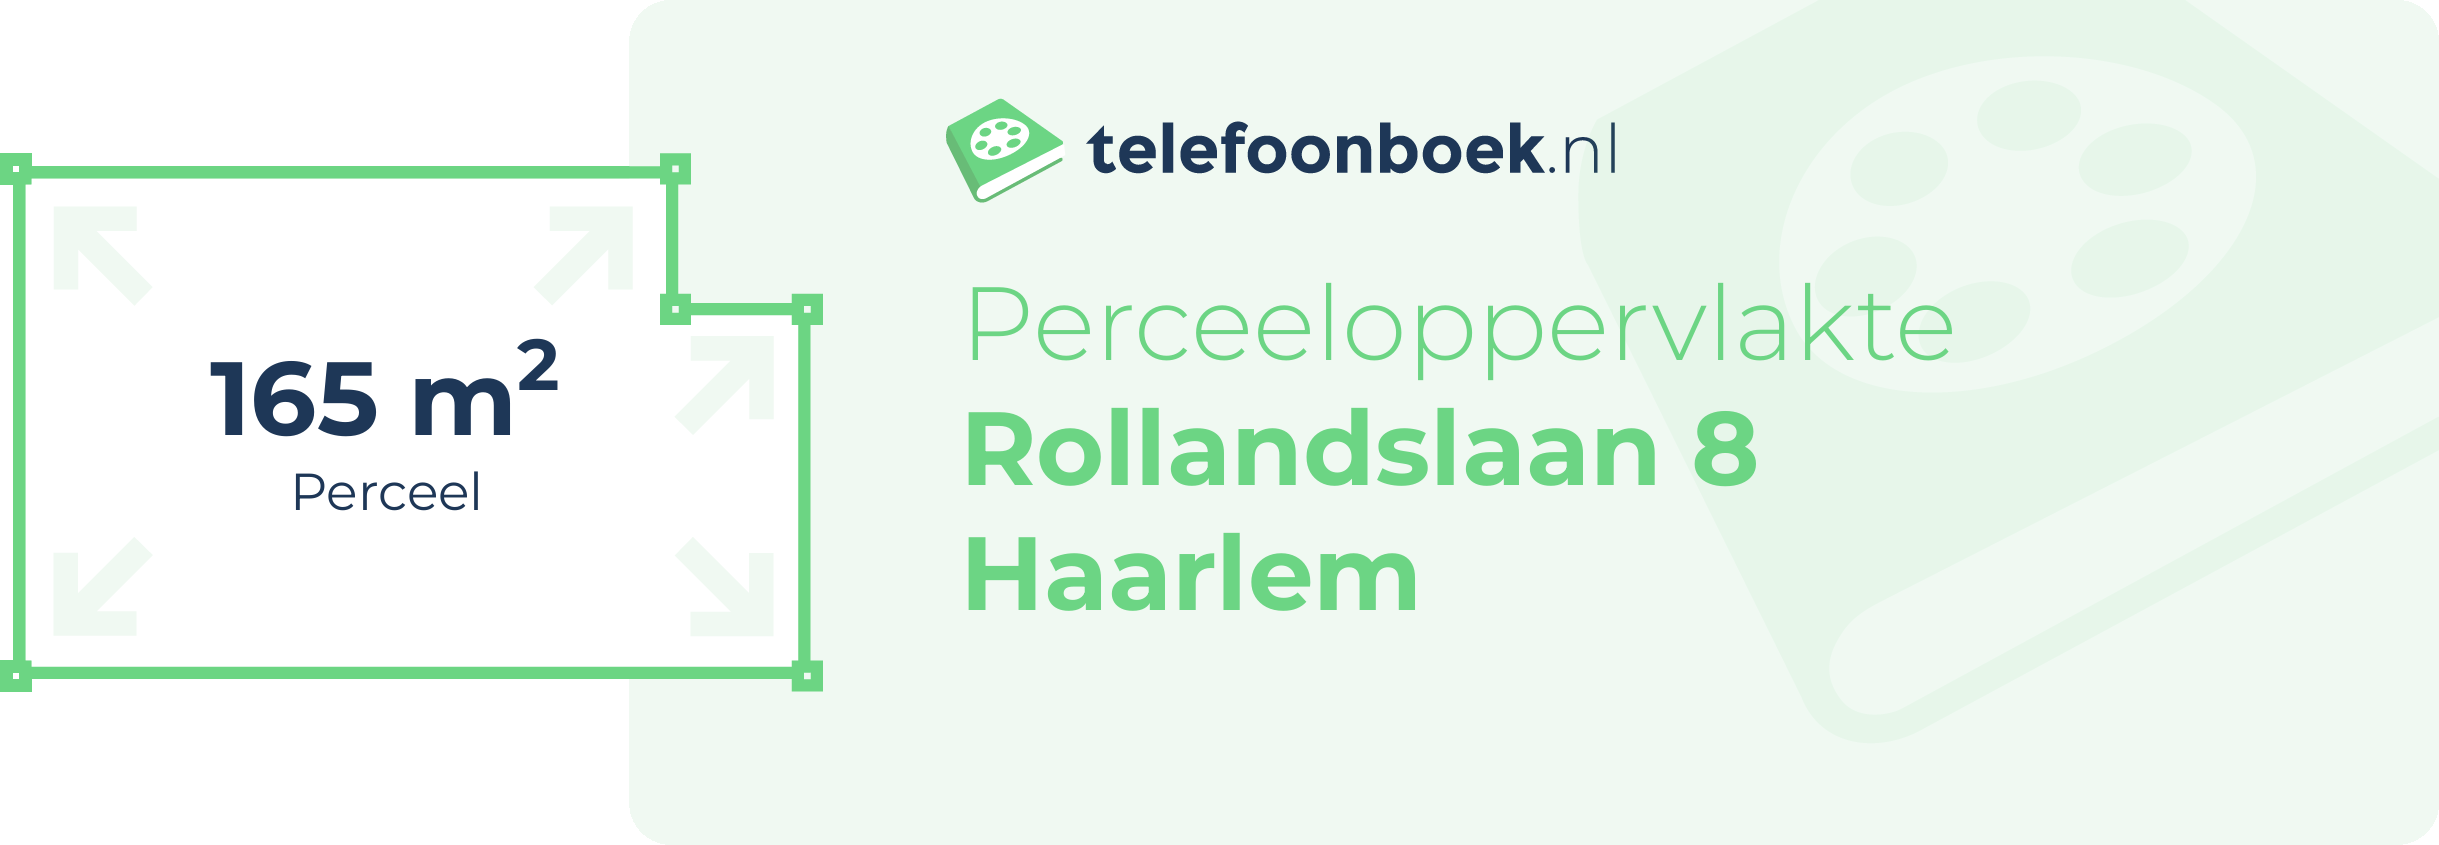 Perceeloppervlakte Rollandslaan 8 Haarlem